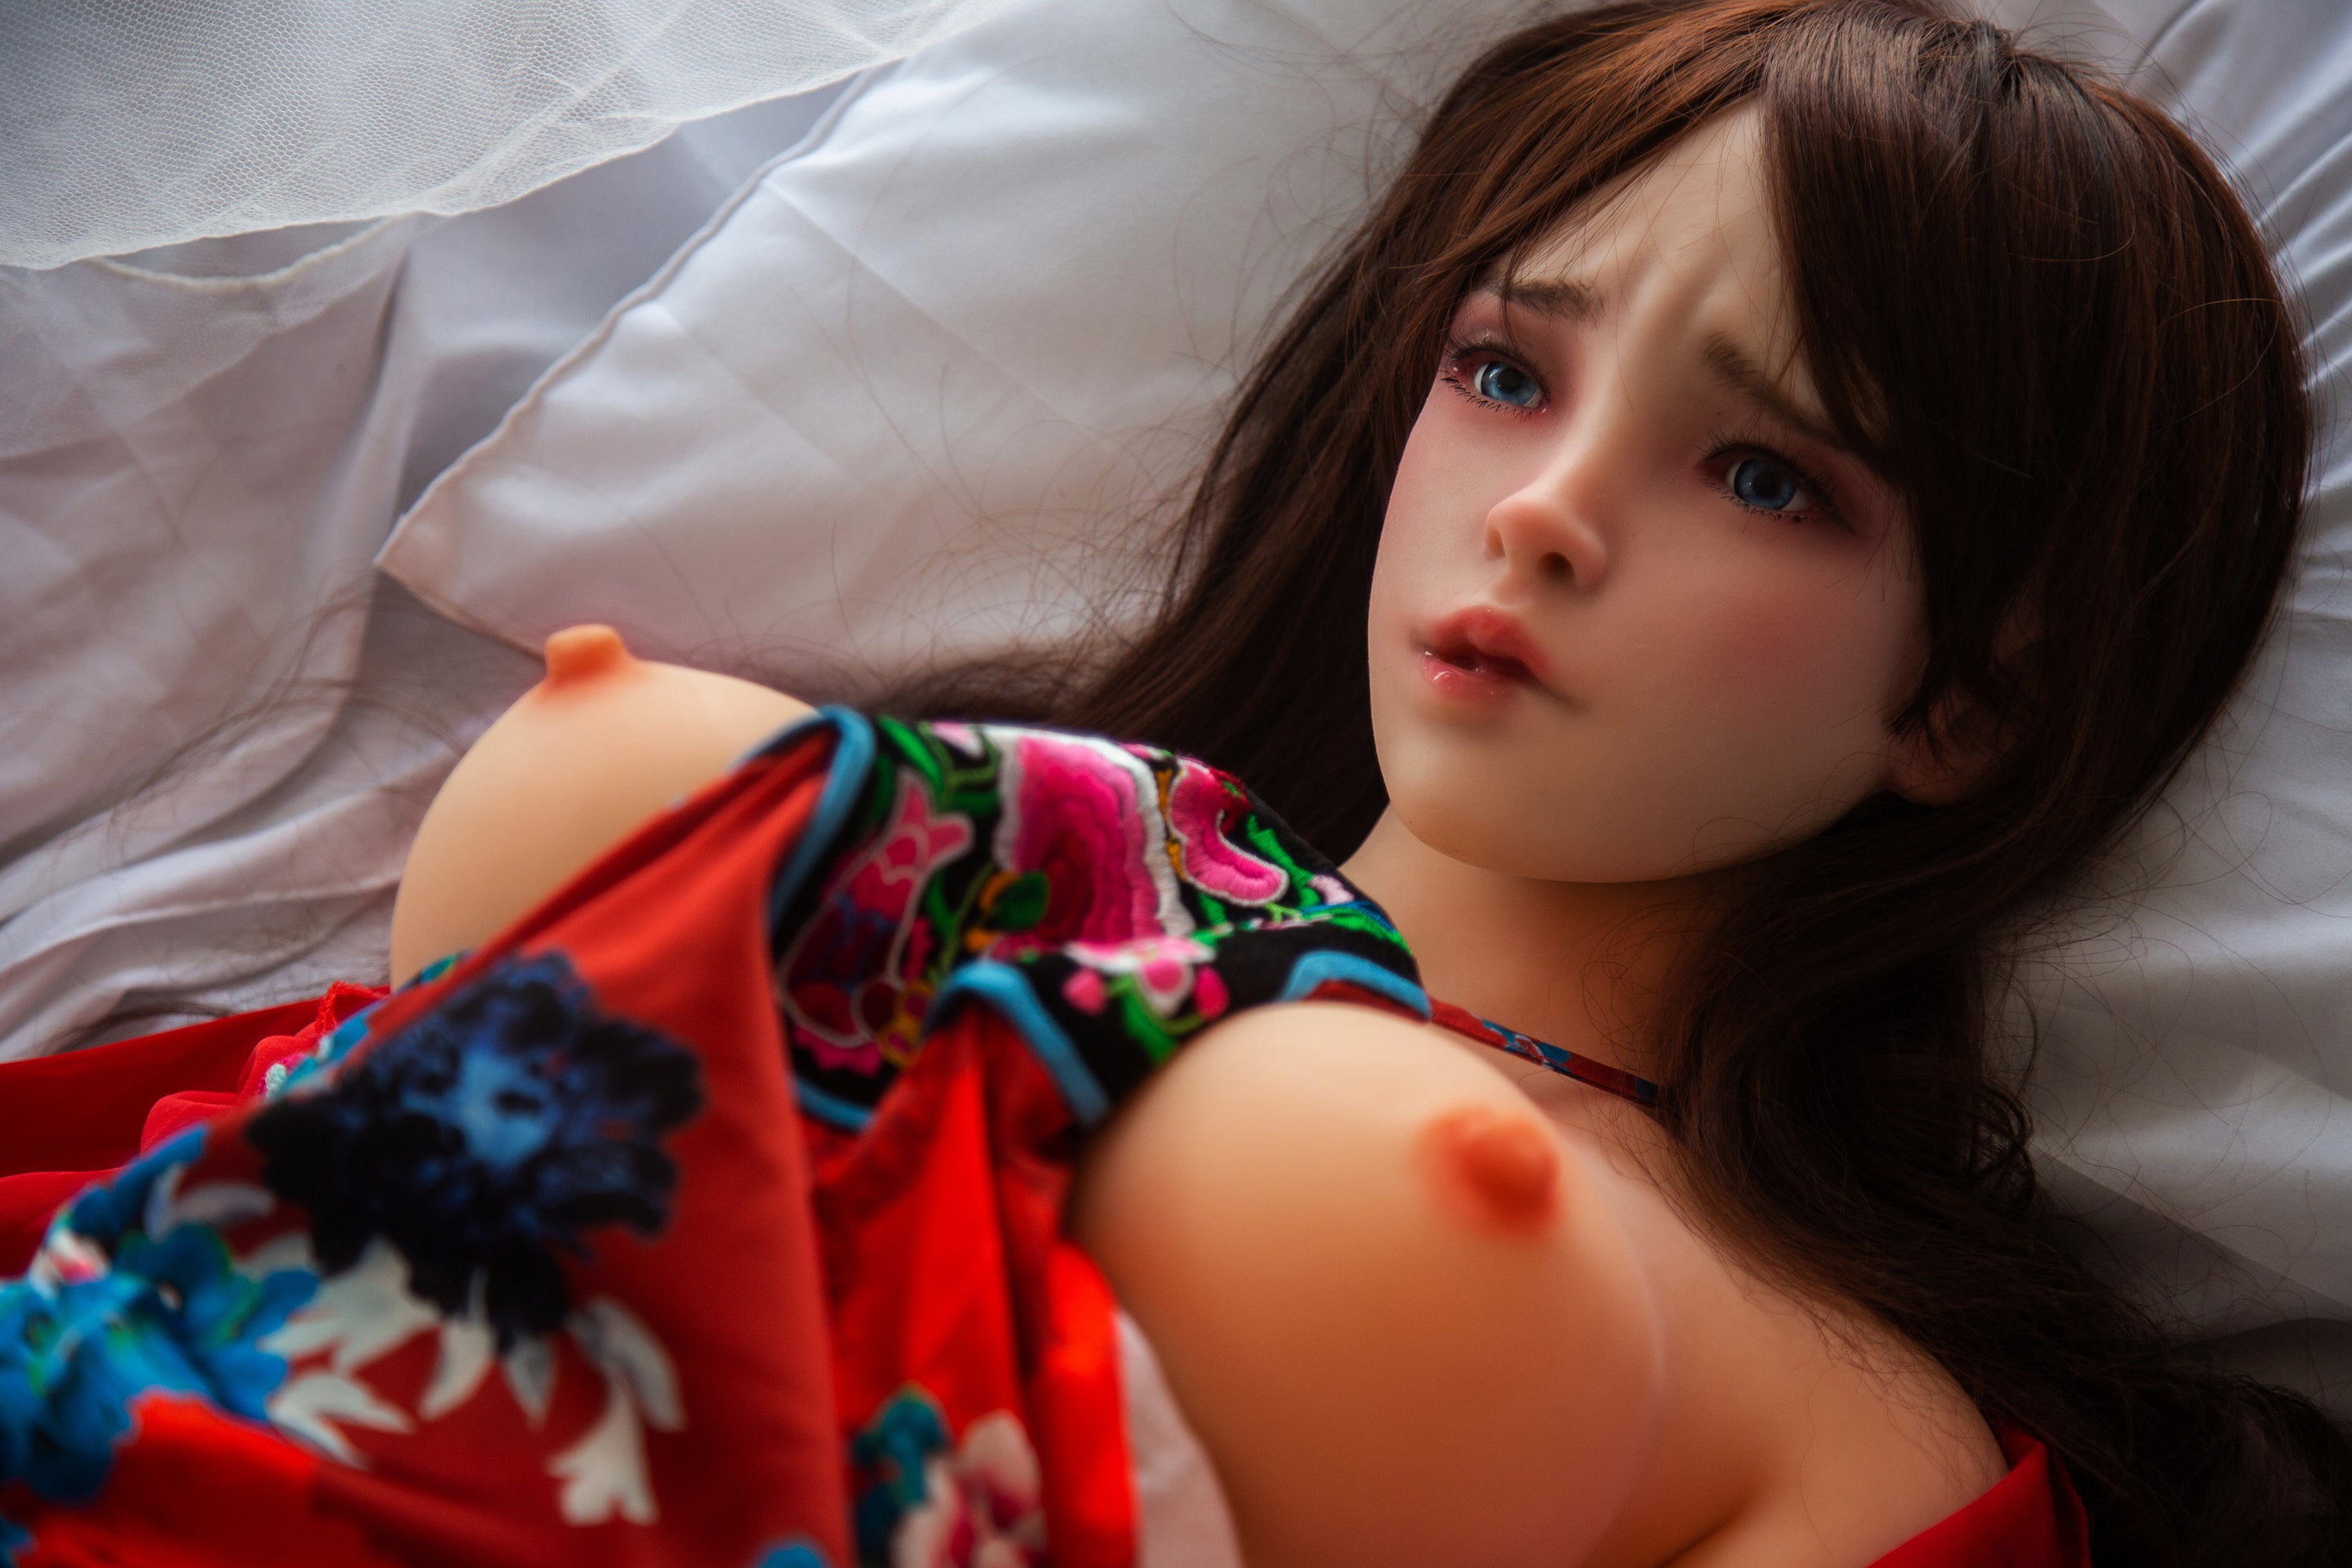 TuTu: Qita Doll Asian Sex Doll Torso